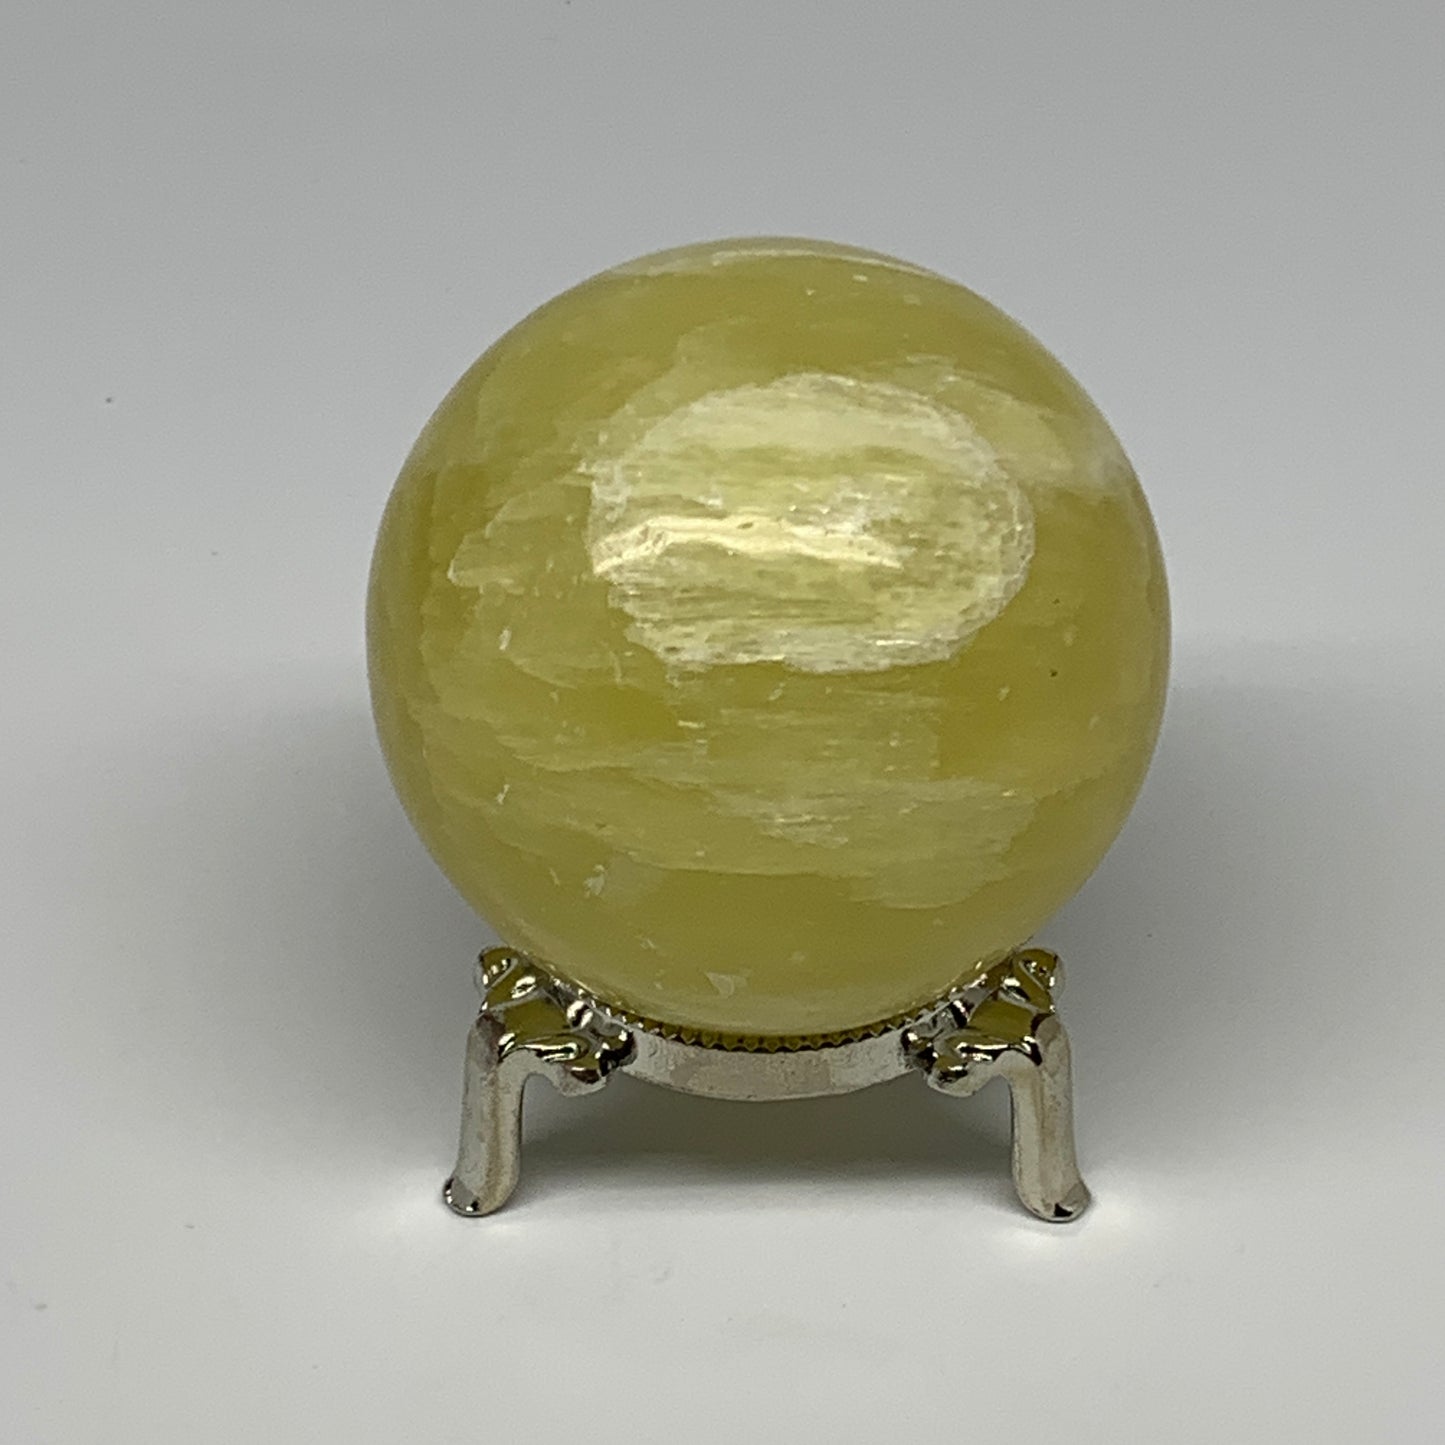 0.925 lbs,2.5"(64mm) Lemon Calcite Sphere Gemstone,Healing Crystal,B26056